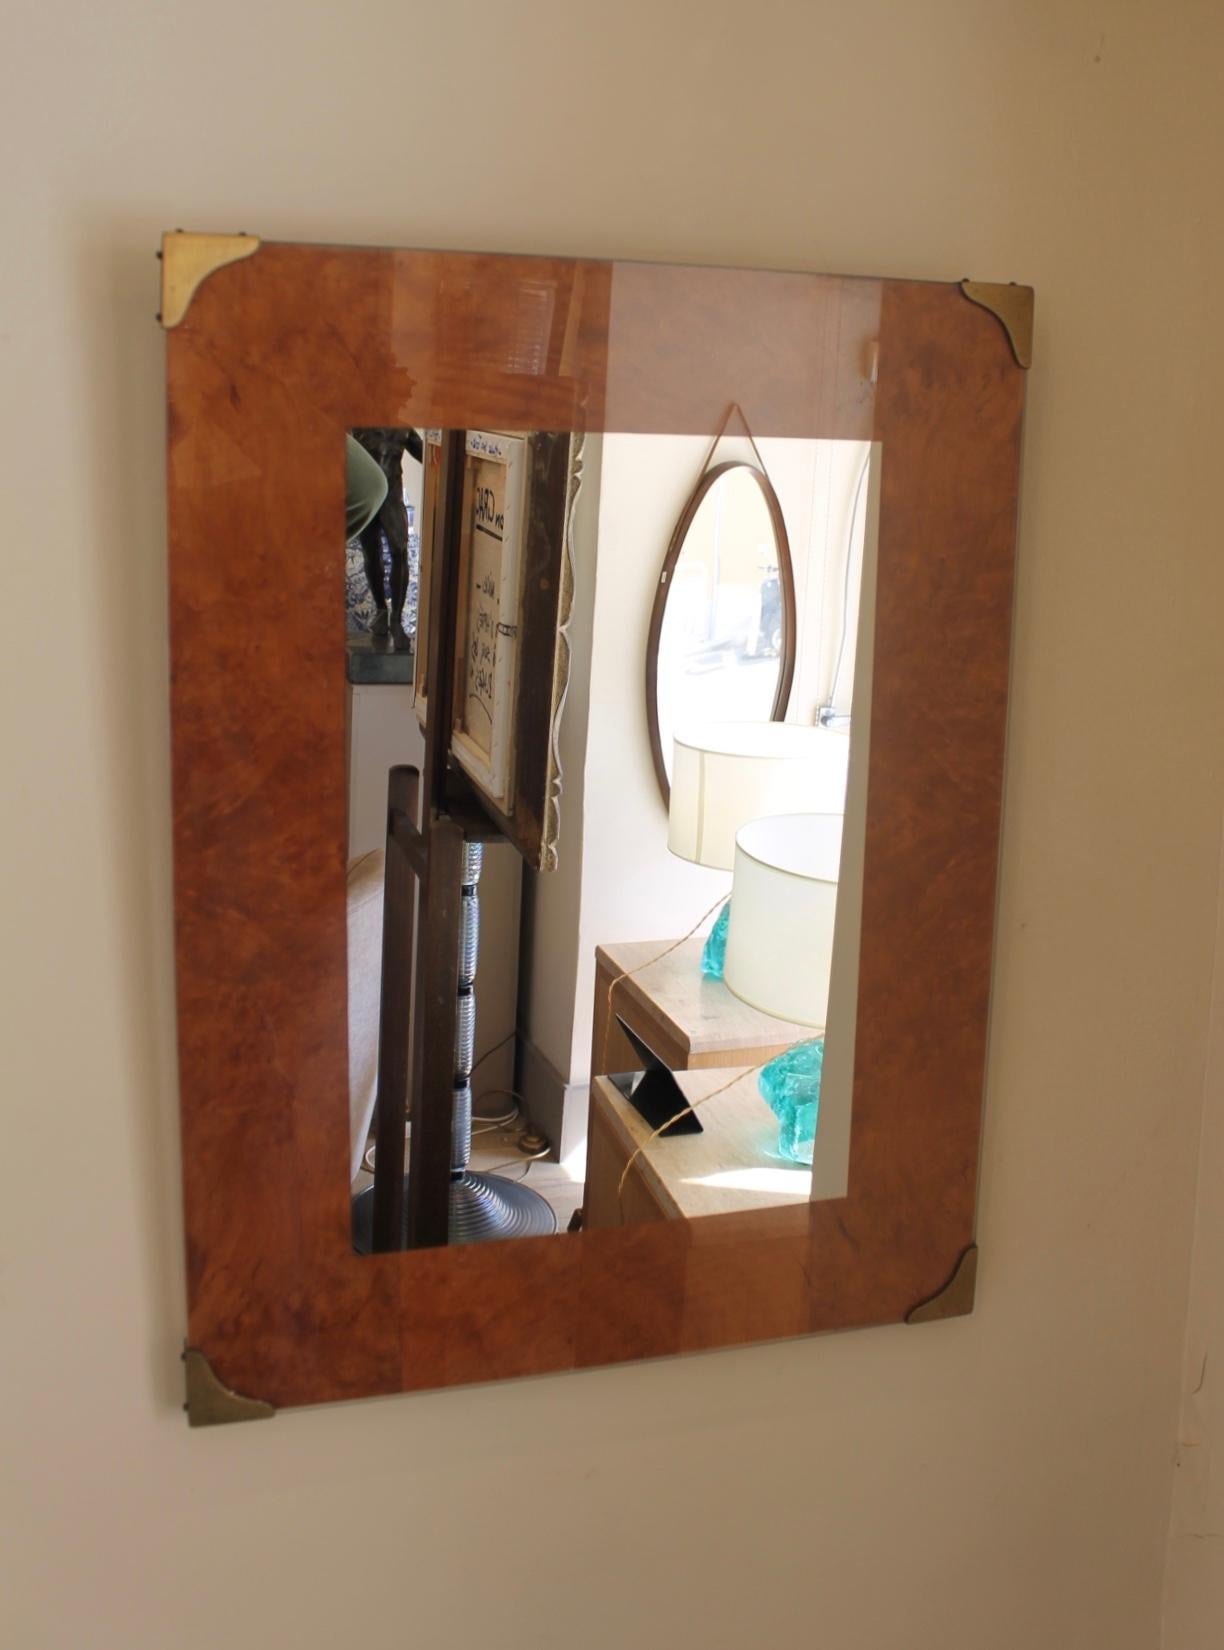 Rechteckiger Spiegel aus gesprenkeltem Ahornholz aus den 1970er Jahren im Stil von Willy Rizzo. In der Mitte ein Spiegel. Vier in Messing.

Schöne Verarbeitung. Sehr gut über einer Kommode oder einer Konsole.